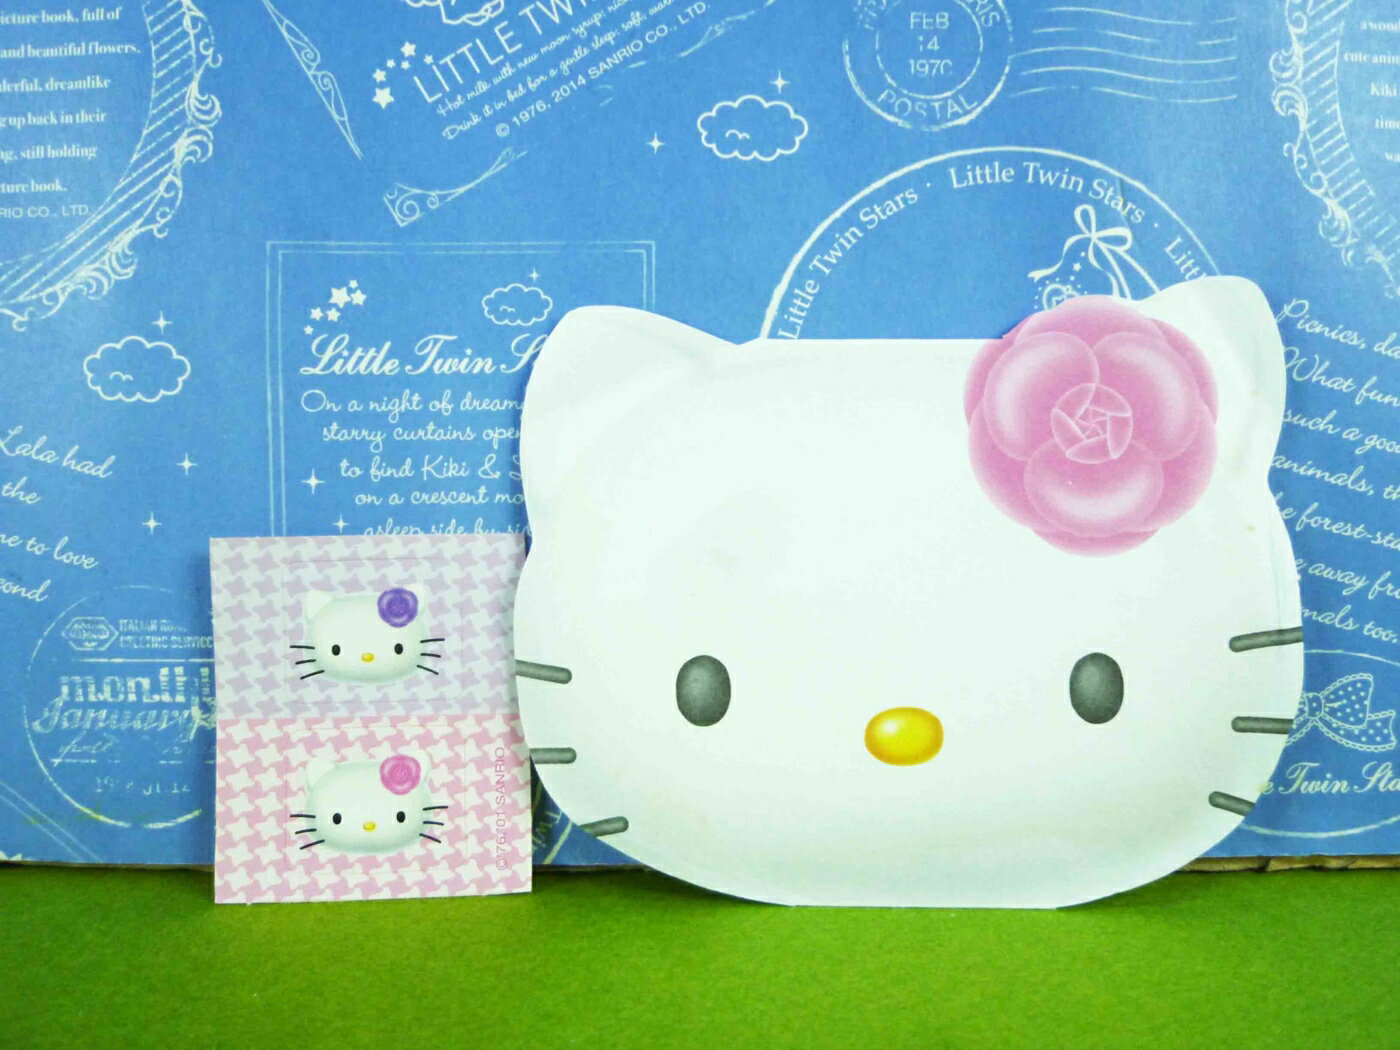 【震撼精品百貨】Hello Kitty 凱蒂貓 紅包袋組 山茶【共1款】 震撼日式精品百貨